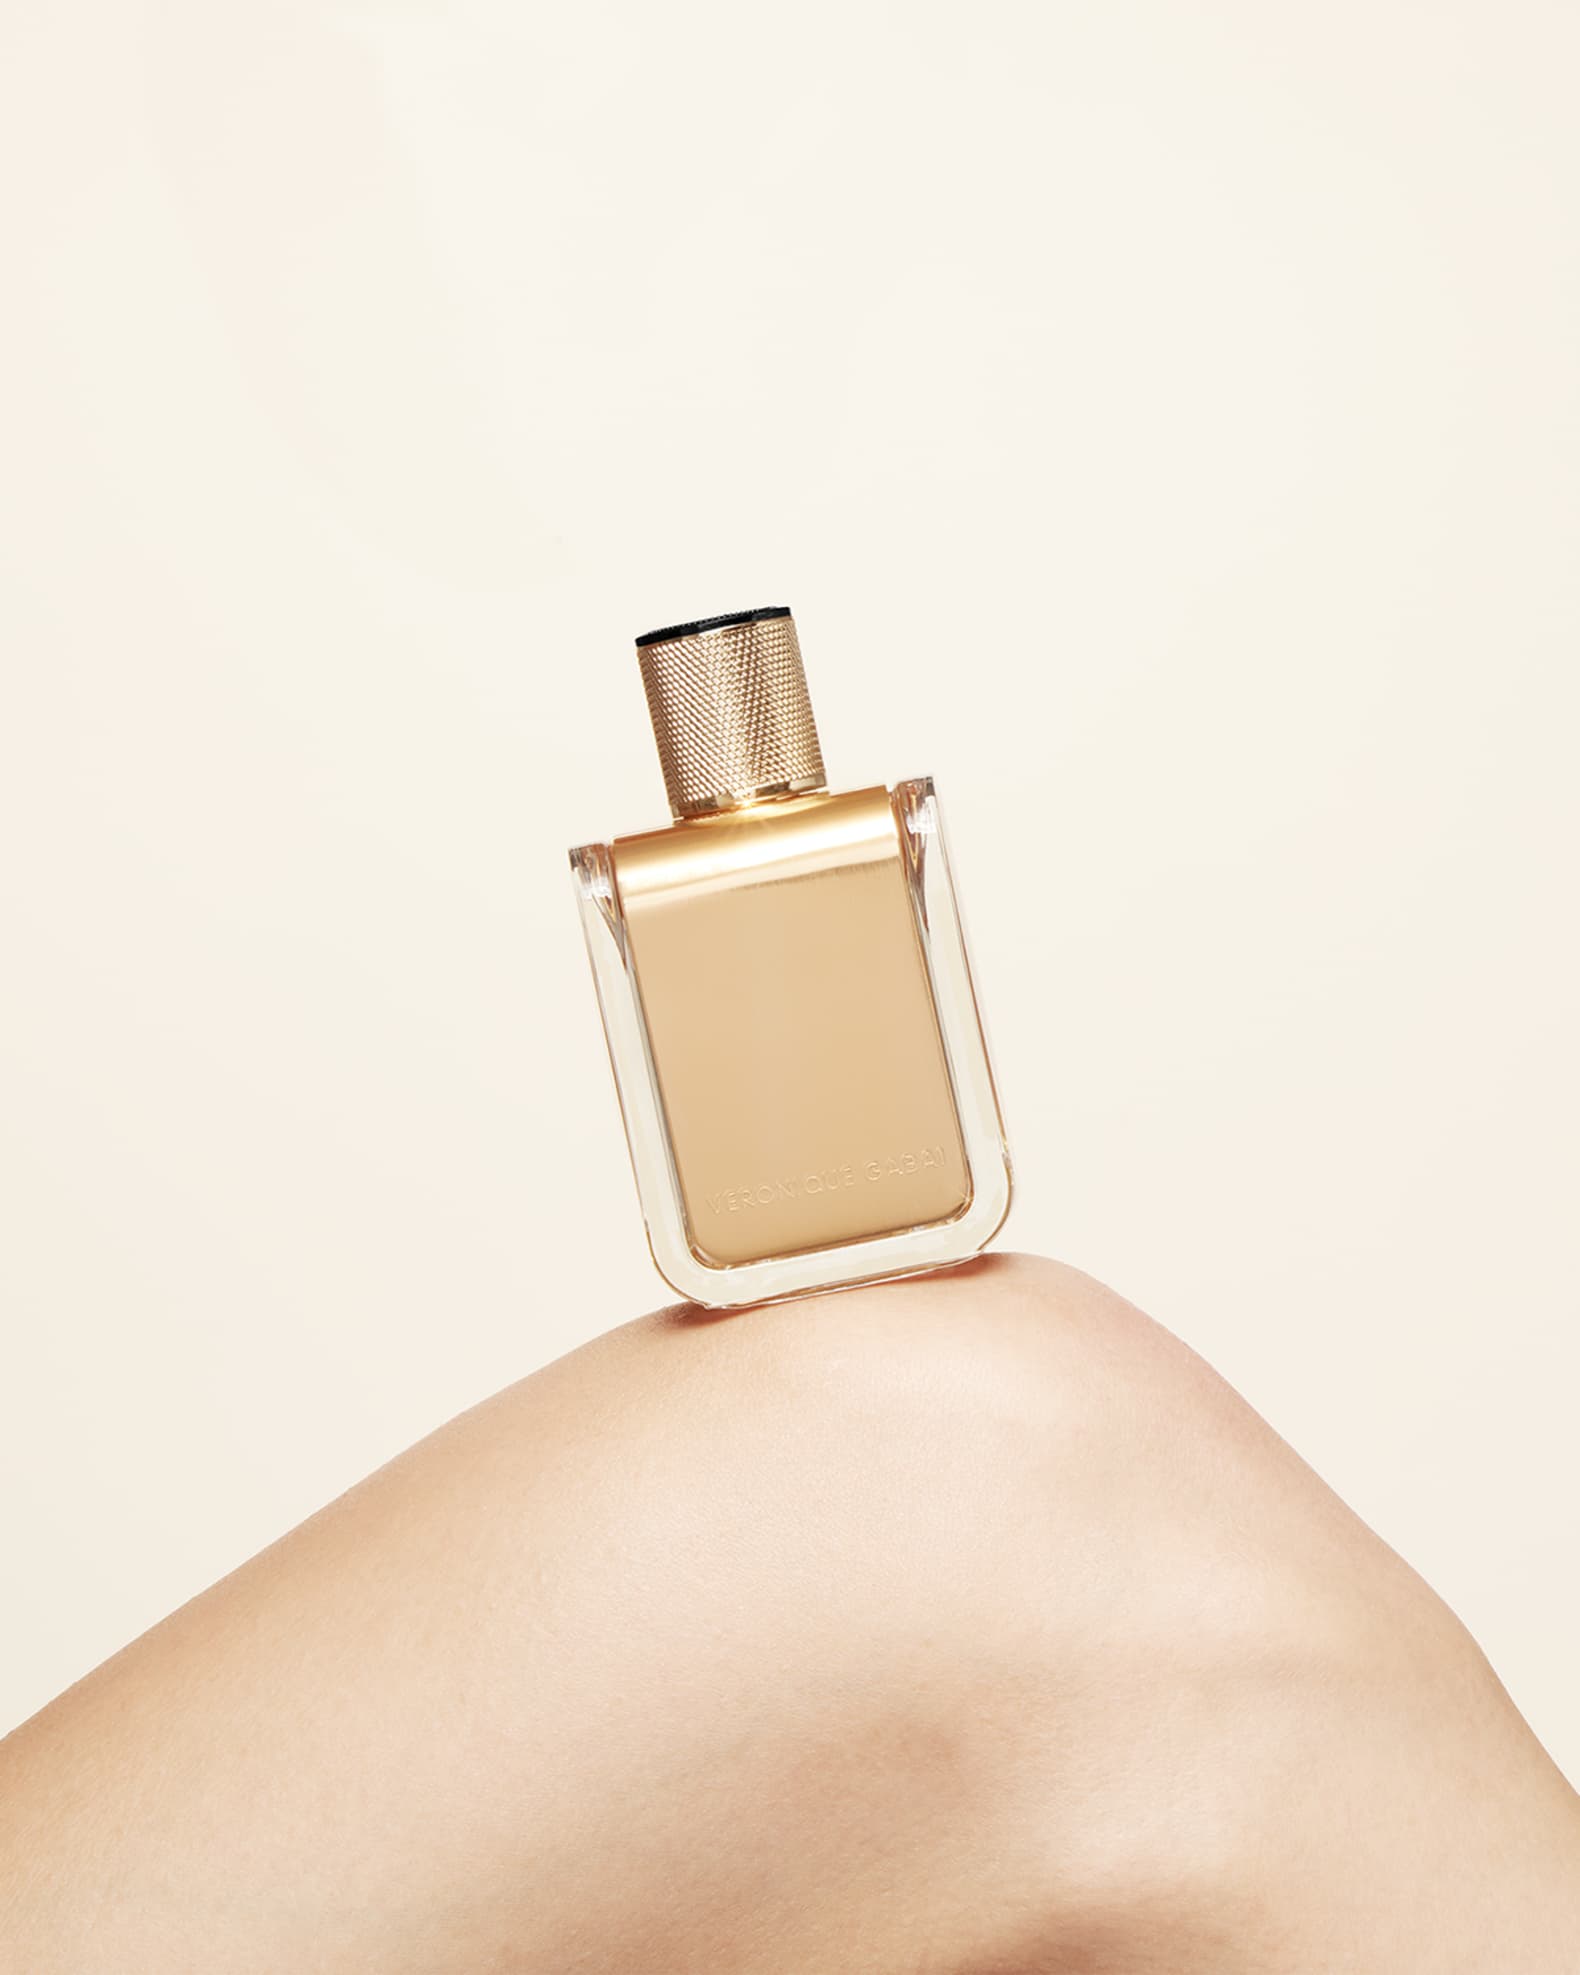 Veronique Gabai Golden Oud Eau de Parfum (85ml) - Multi - One Size